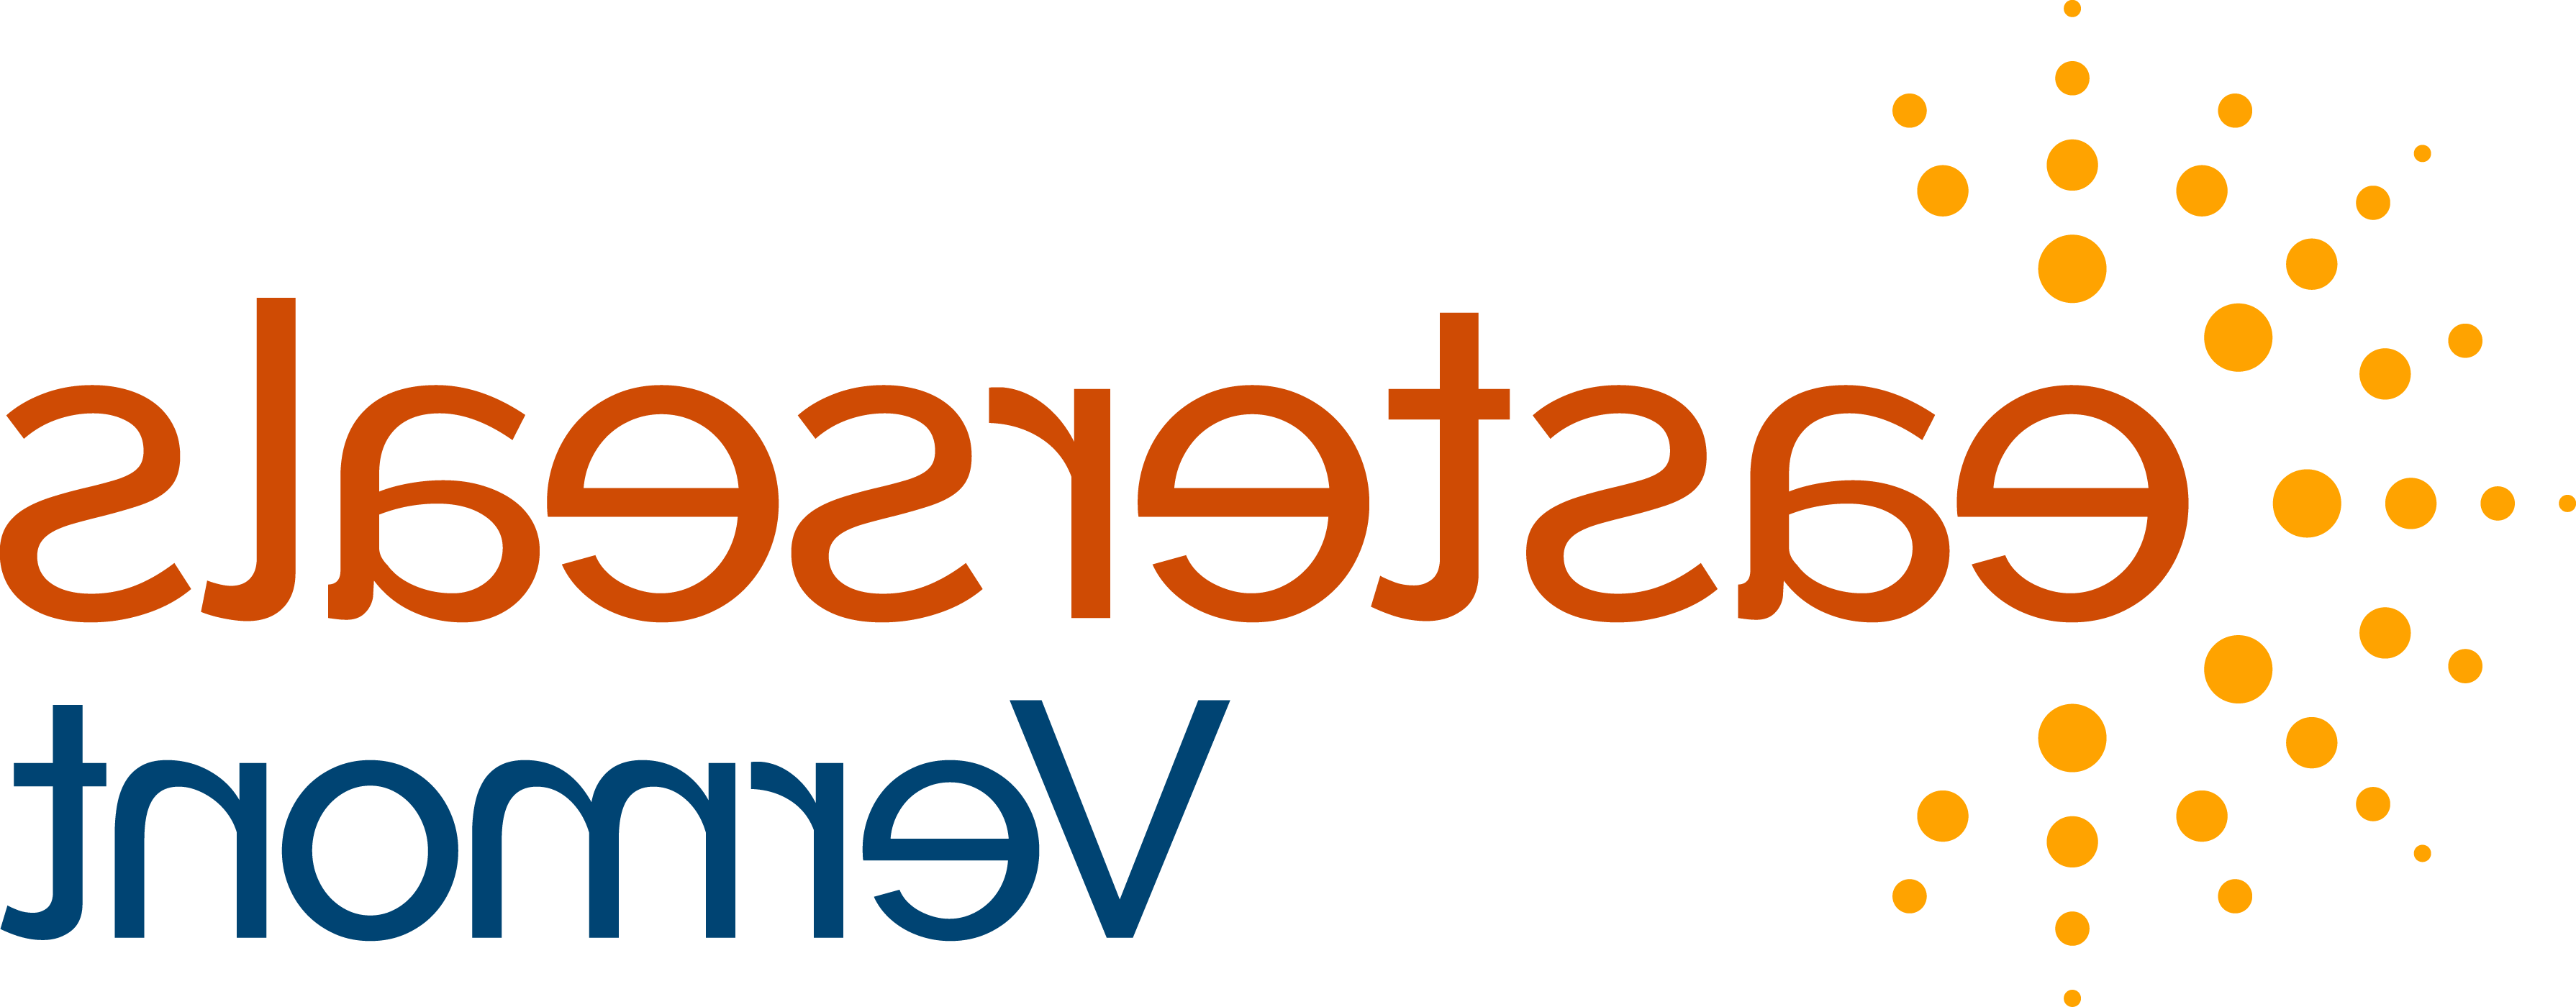 Easterseals VT Logo